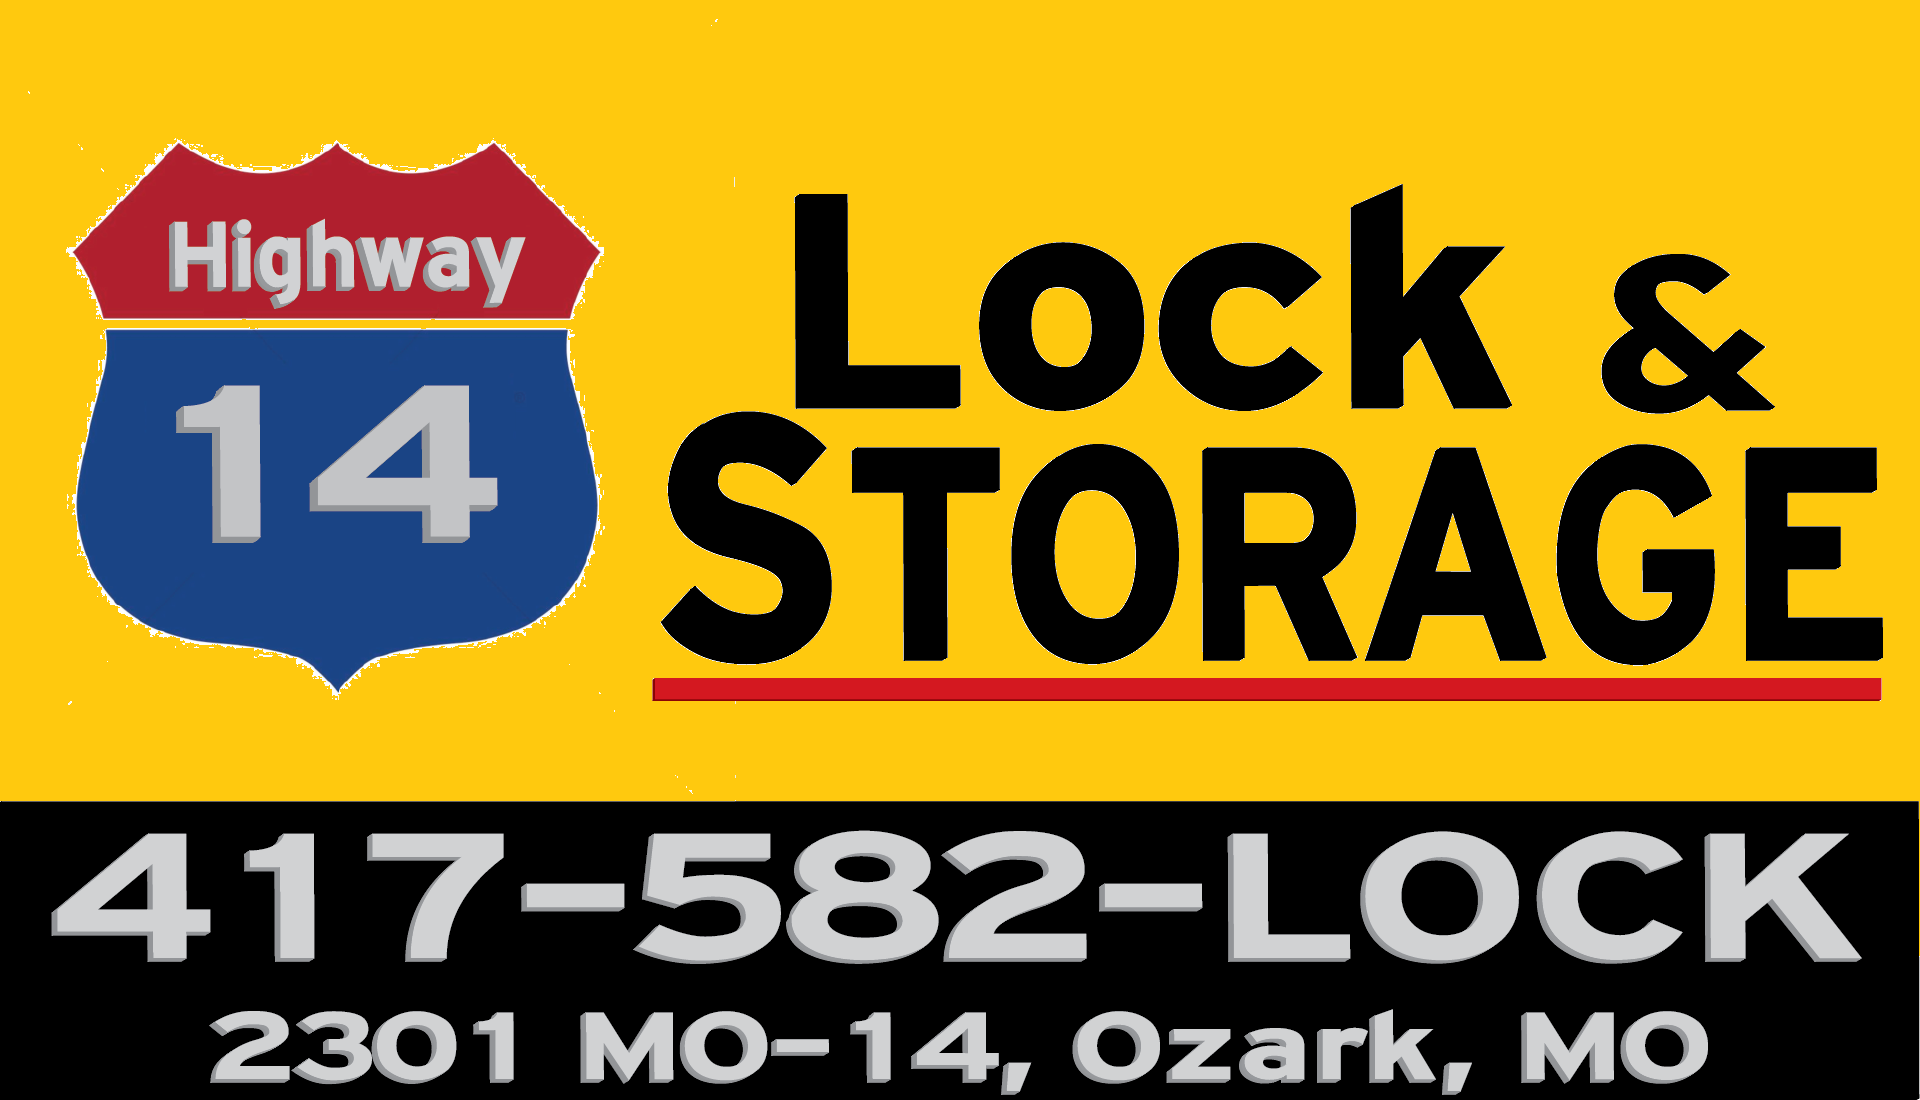 Highway 14 Lock & Storage